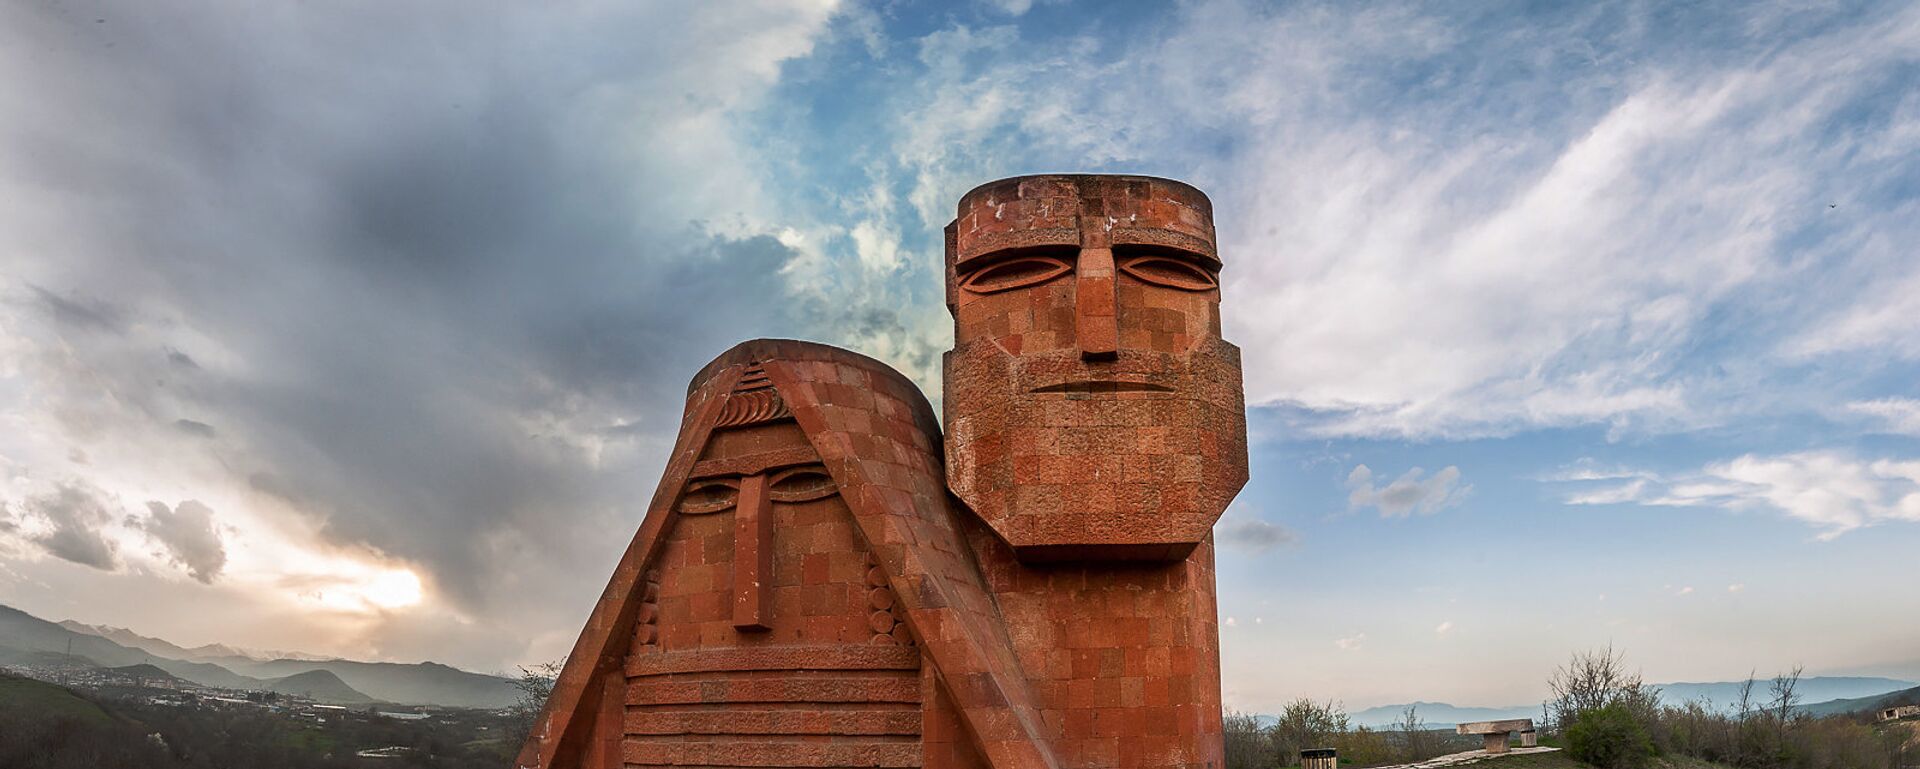 Памятник Мы-наши горы. Степанакерт. НКР - Sputnik Армения, 1920, 22.03.2021